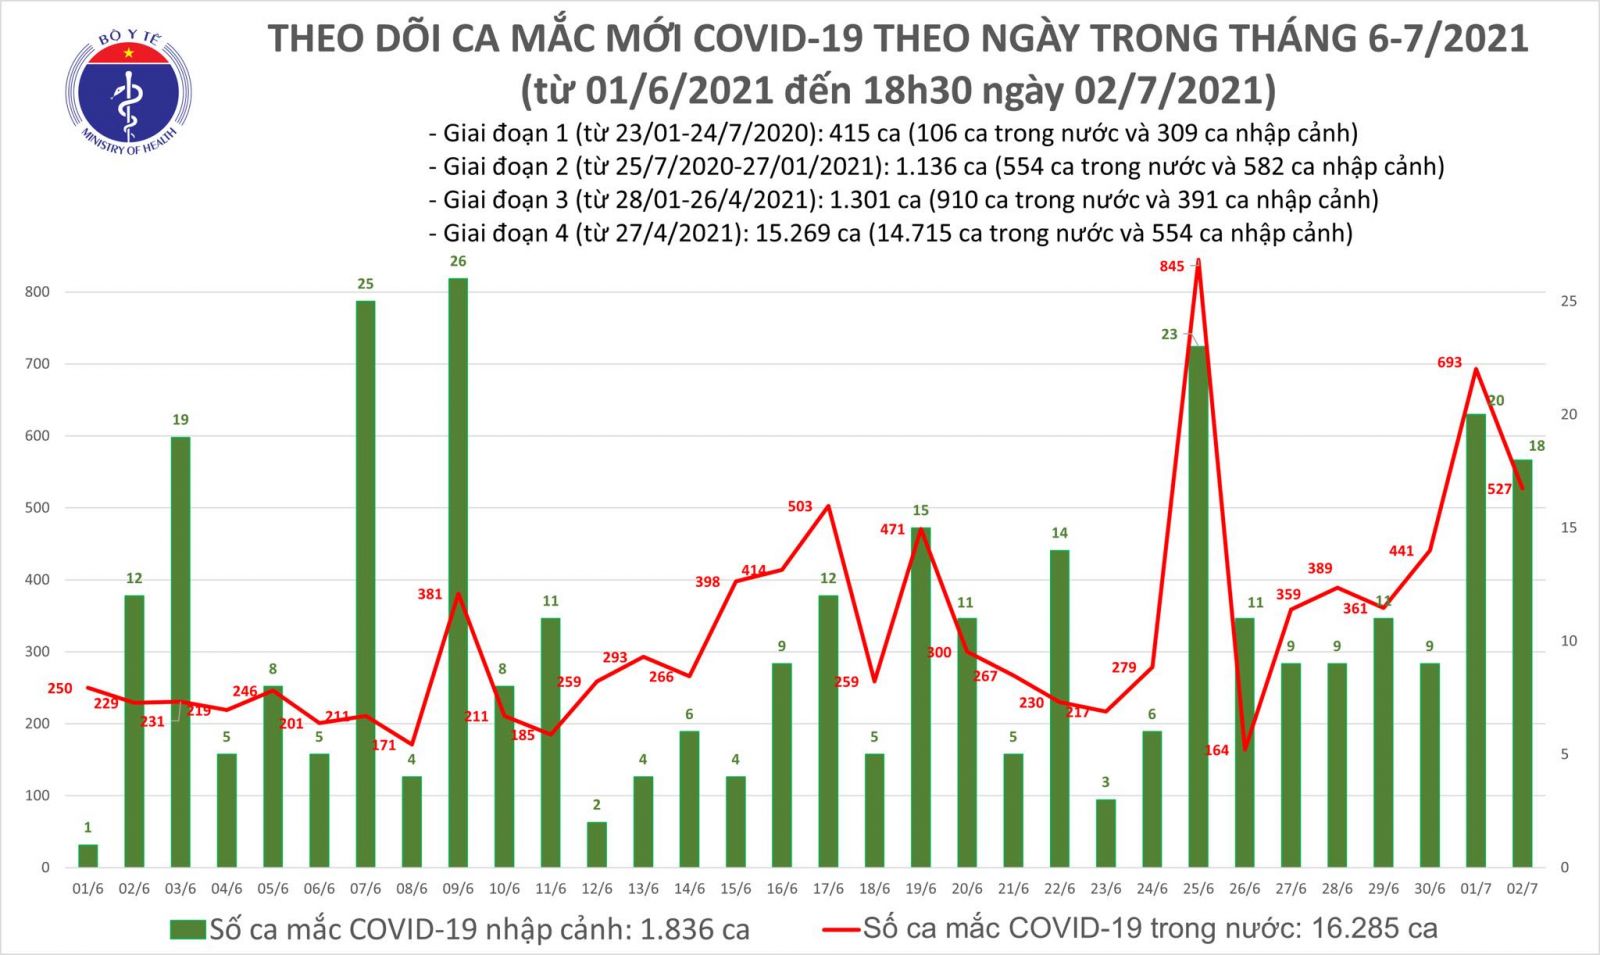 Tối 2/7: Có 219 ca mắc COVID-19, TP Hồ Chí Minh tiếp tục nhiều nhất với 150 ca